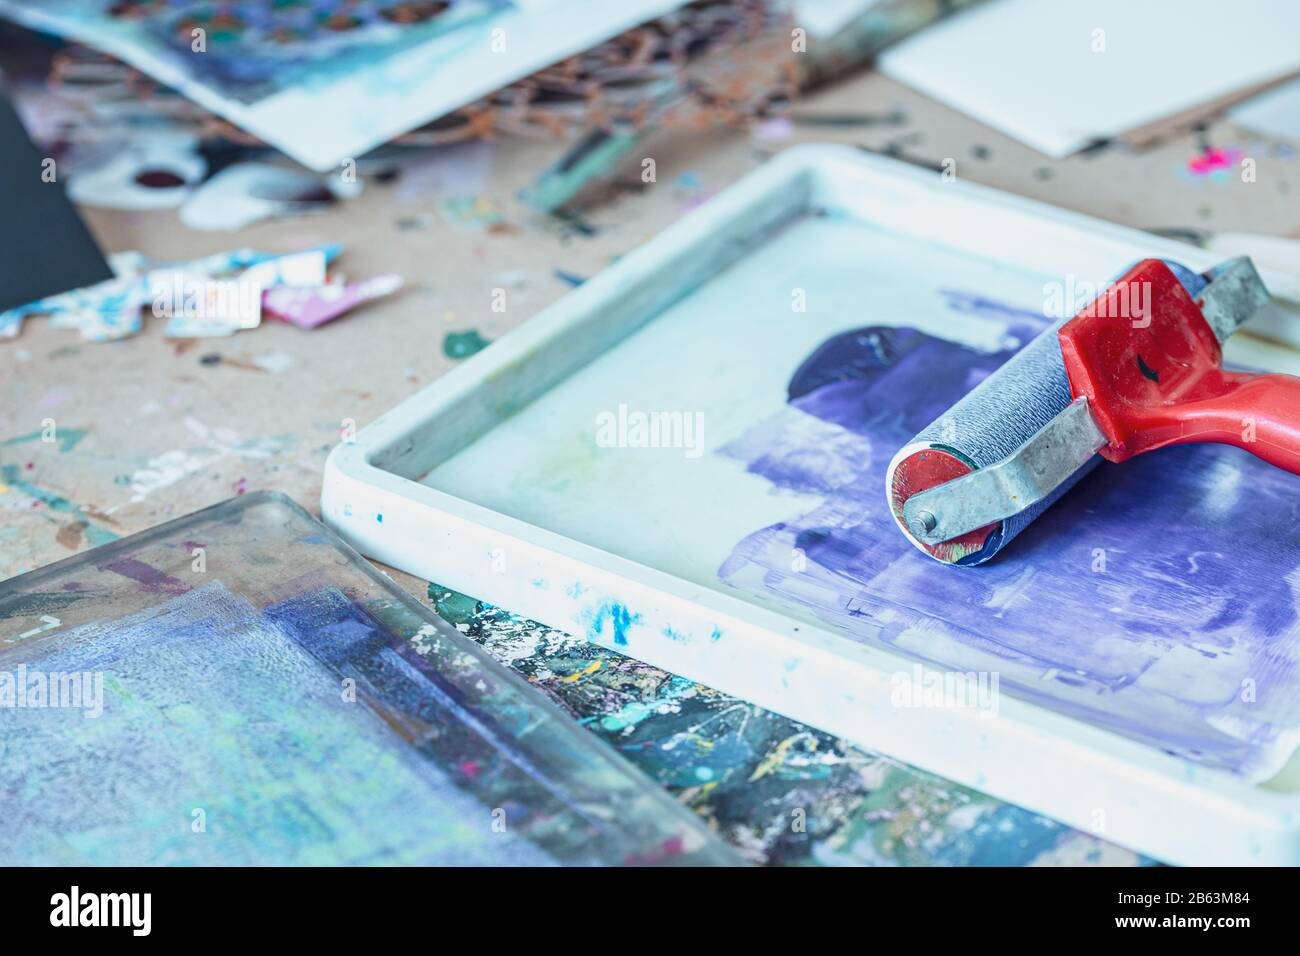 Rullo di inchiostro rosso e vernice blu spruzzata nel vassoio - strumenti creativi per la stampa Foto Stock